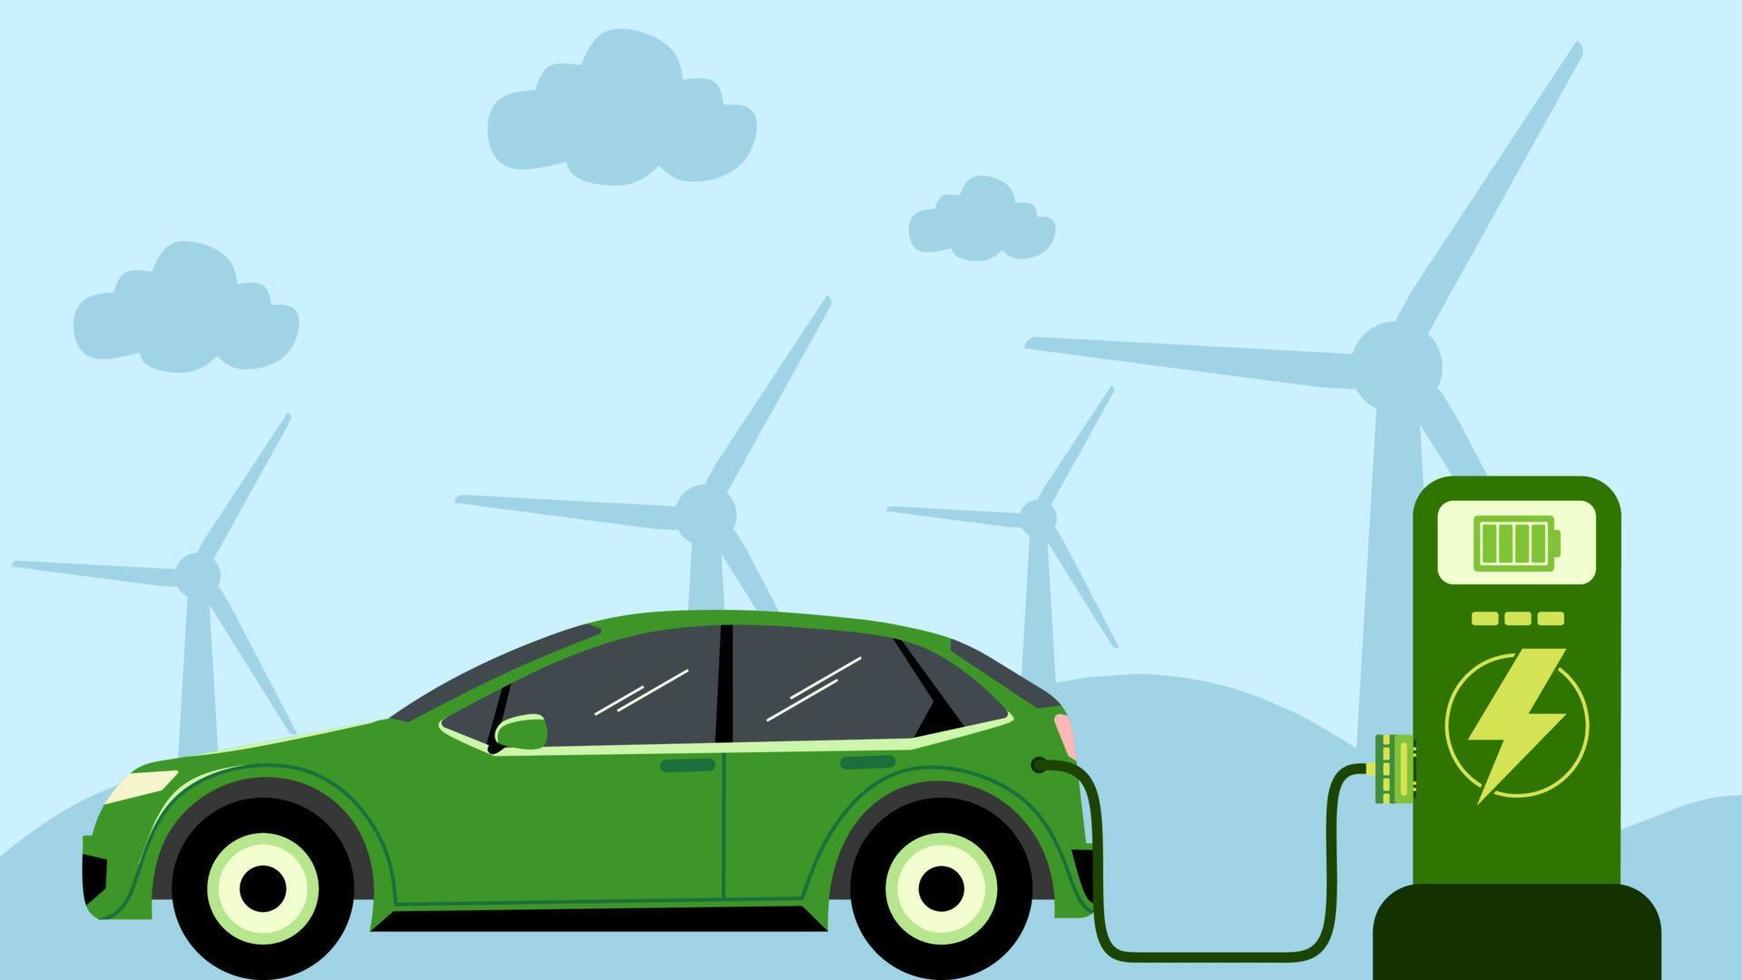 elektrisk fordon vektor illustration. elektrisk bil på laddning station. teknologi transport av elektrisk fordon för grön energi och miljö. illustration av framtida teknologi